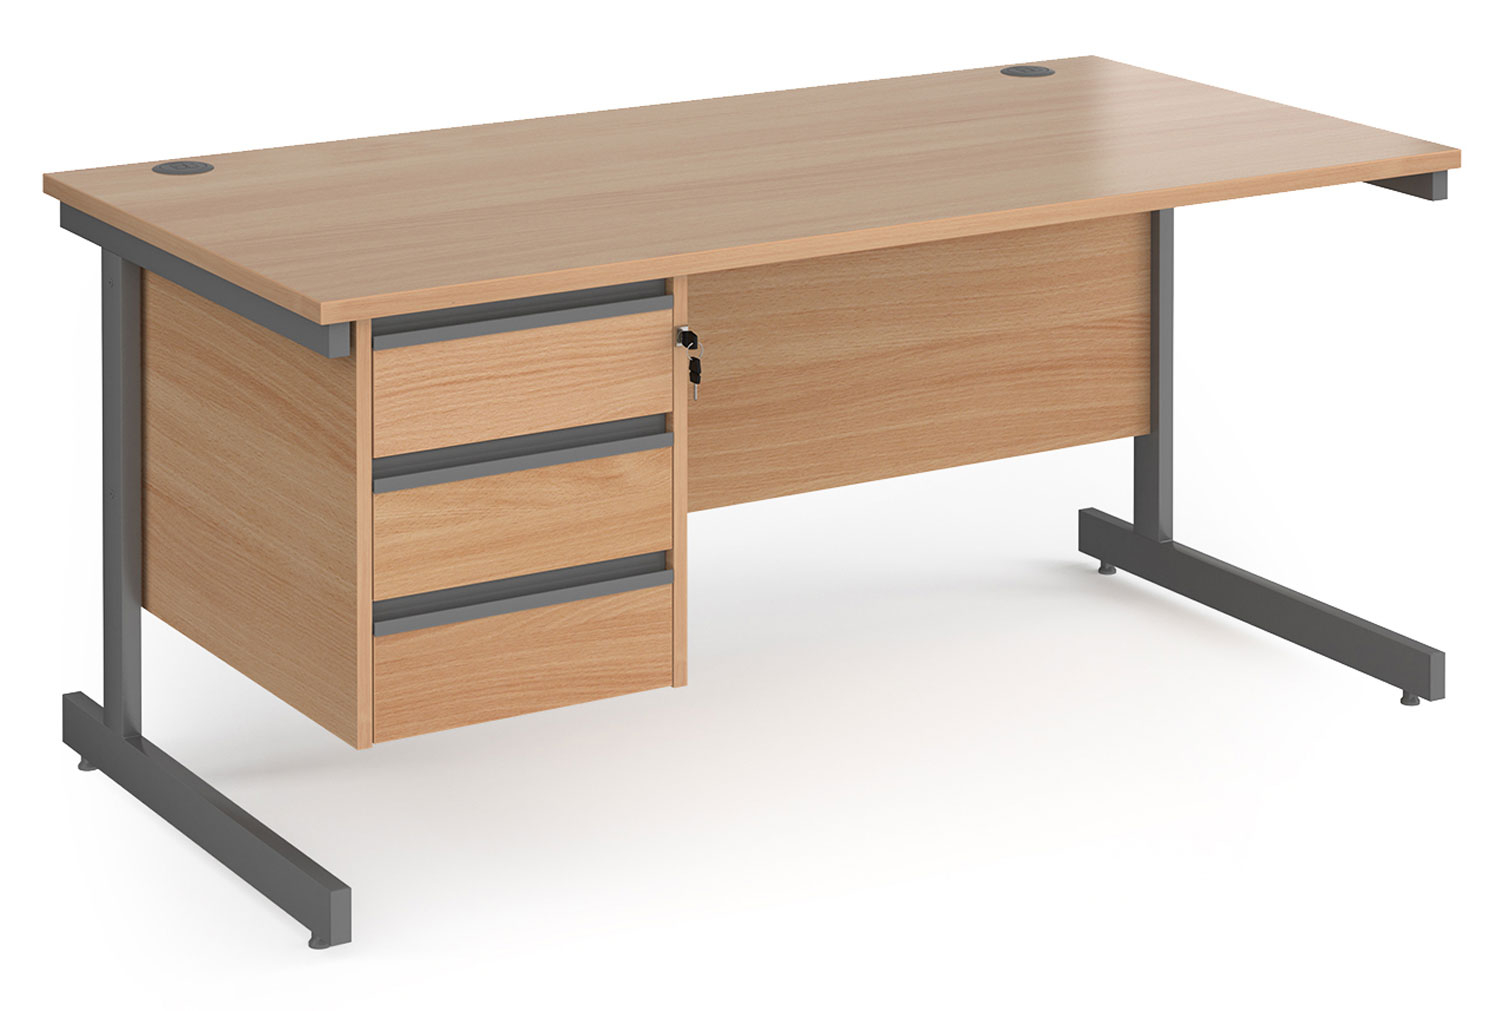 Value Line Classic+ Rectangular C-Leg Office Desk 3 Drawers (Graphite Leg), 160wx80dx73h (cm), Beech, Fully Installed